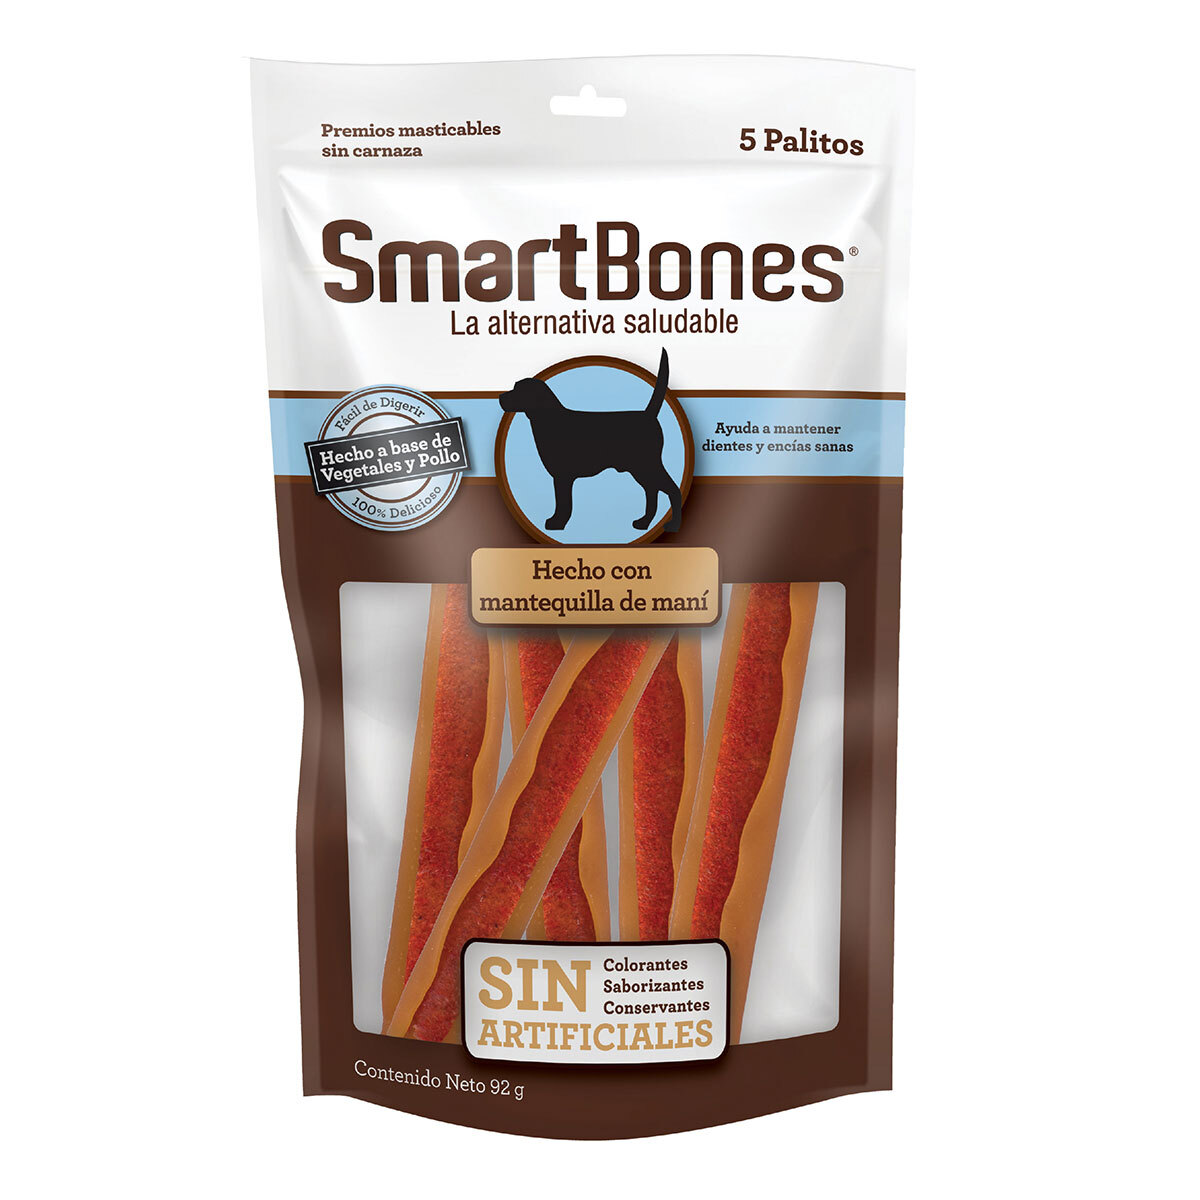 SmartBones Premios Masticables Naturales con Forma de Sticks Receta Mantequilla de Maní para Perro, 5 Piezas